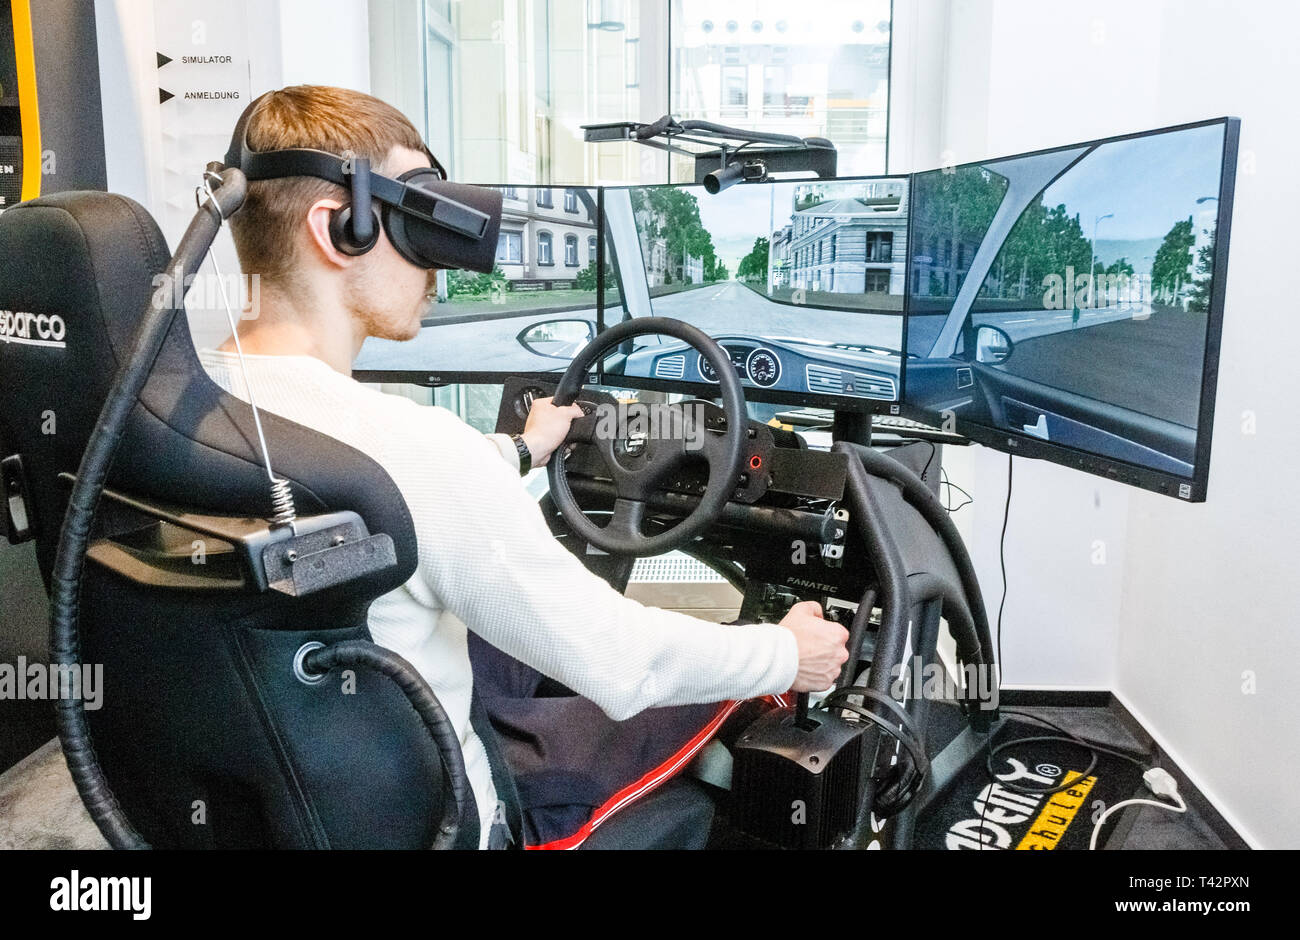 Hamburgo, Alemania. 13 abr, 2019. Un hombre joven se sienta con VR  (Realidad Virtual) los cristales en un simulador de conducción de 360  grados. Practicando en realidad artificial, Driving Lessons se guardan